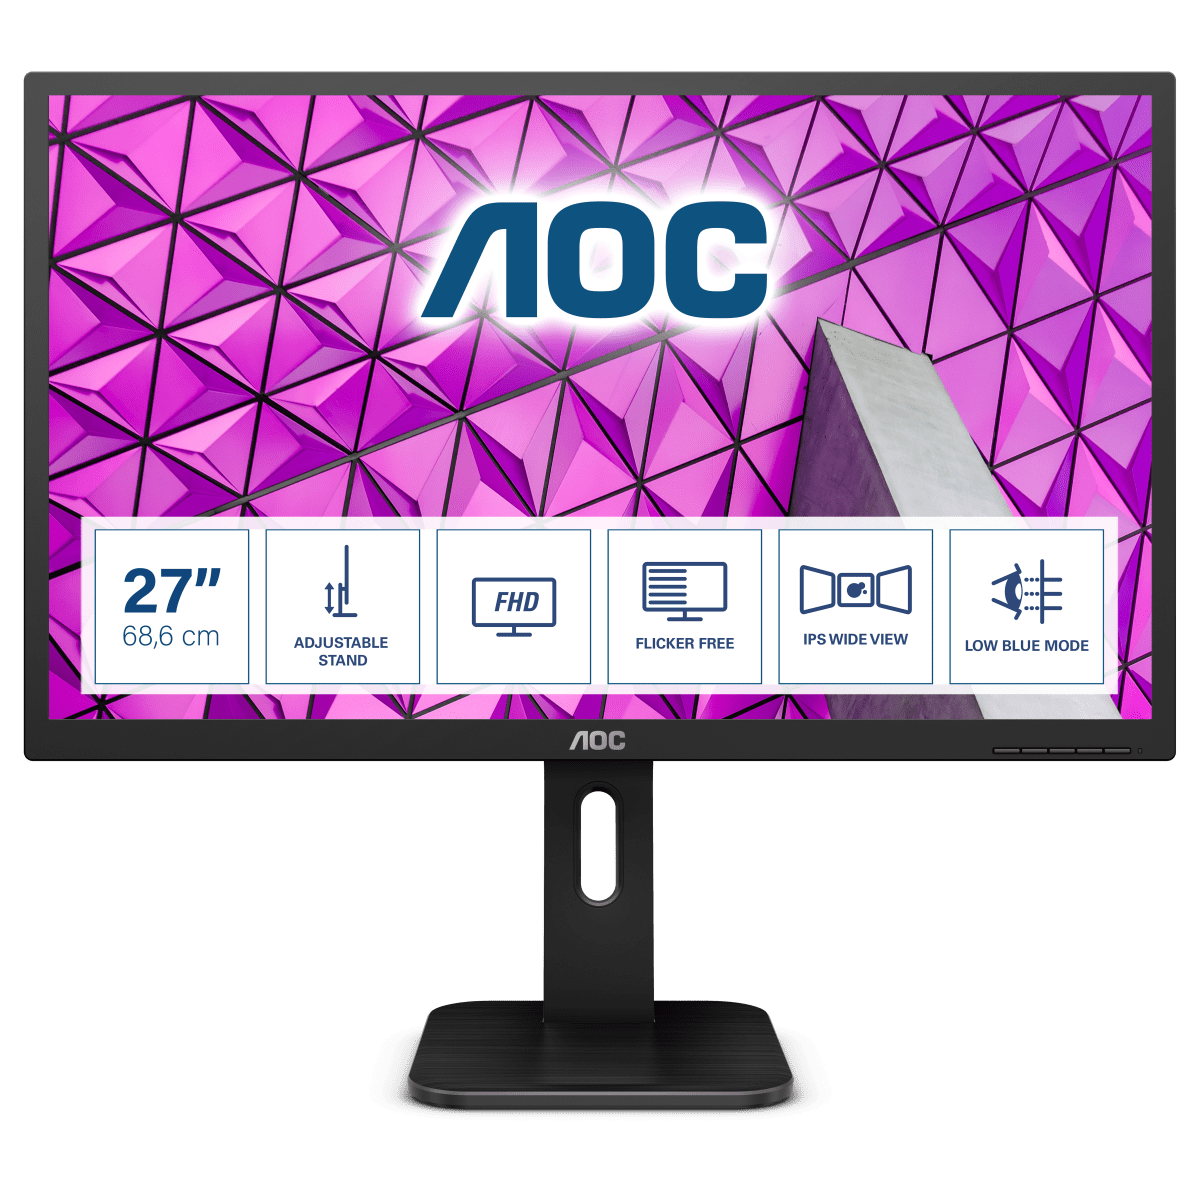 Монитор для дома и офиса AOC 27P1 в официальном интернет магазине AGONBYAOC.ru (AOC Россия)